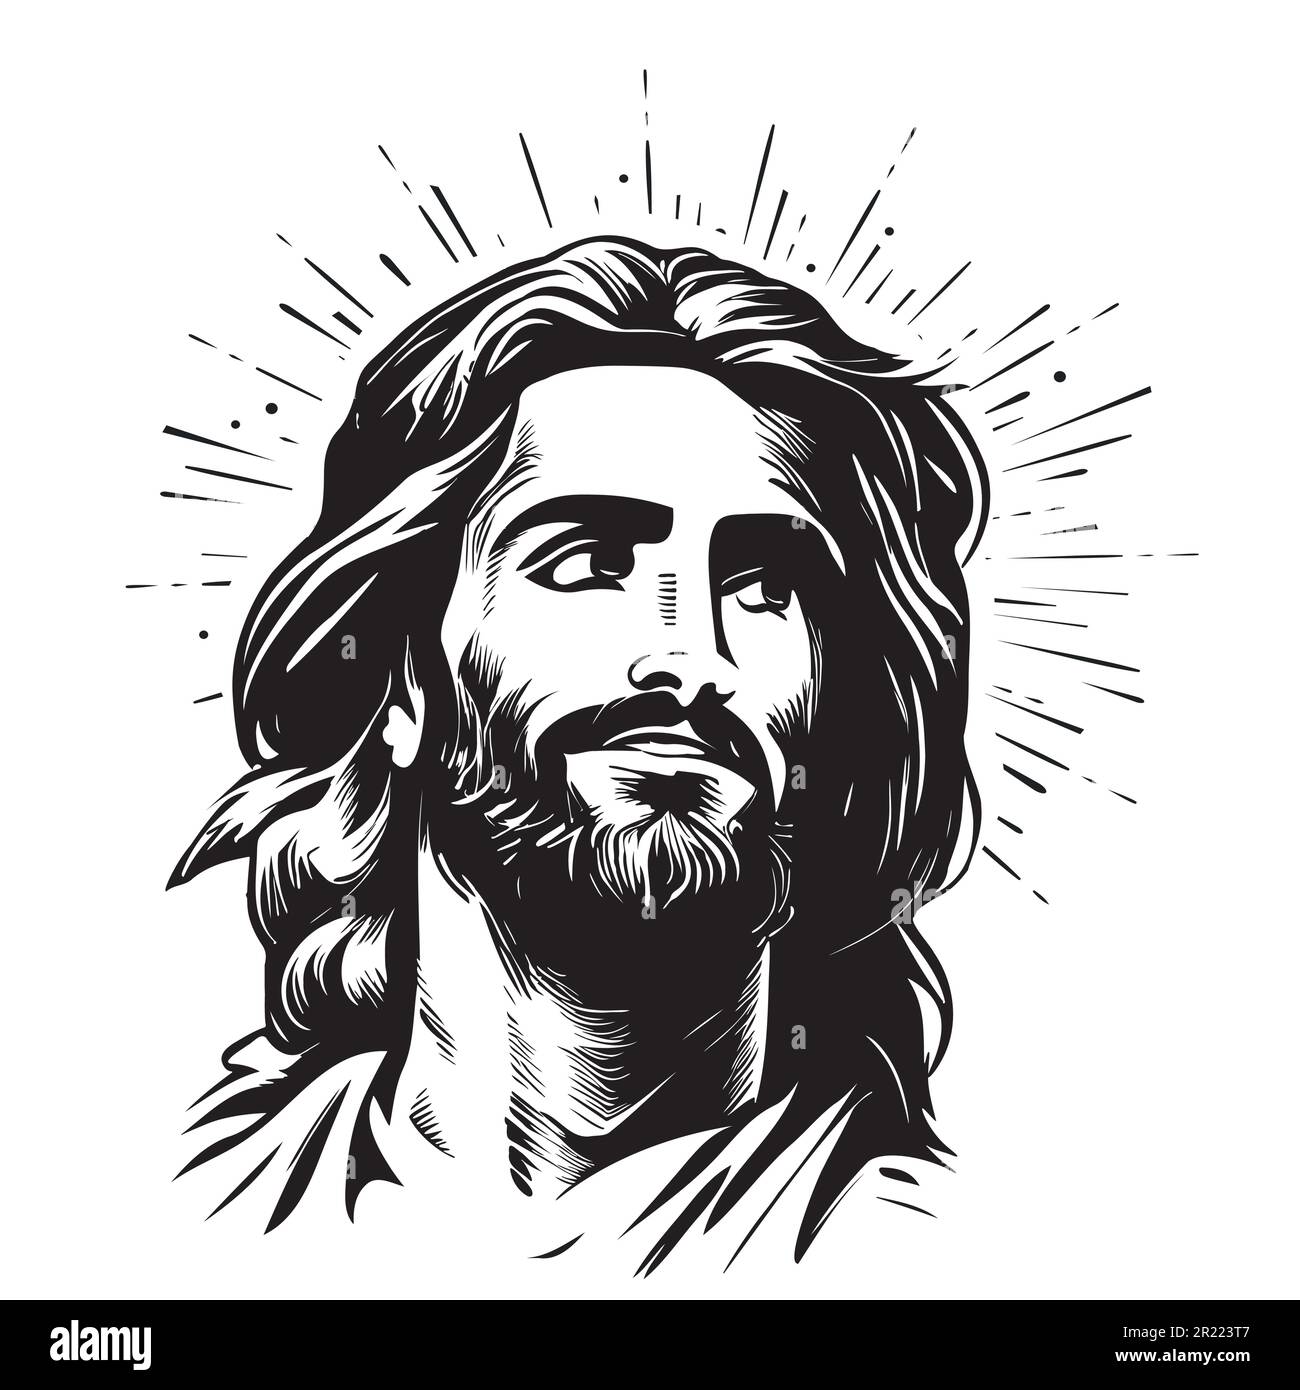 Portrait de Jésus esquisse main dessinée dans l'illustration de style Doodle Illustration de Vecteur